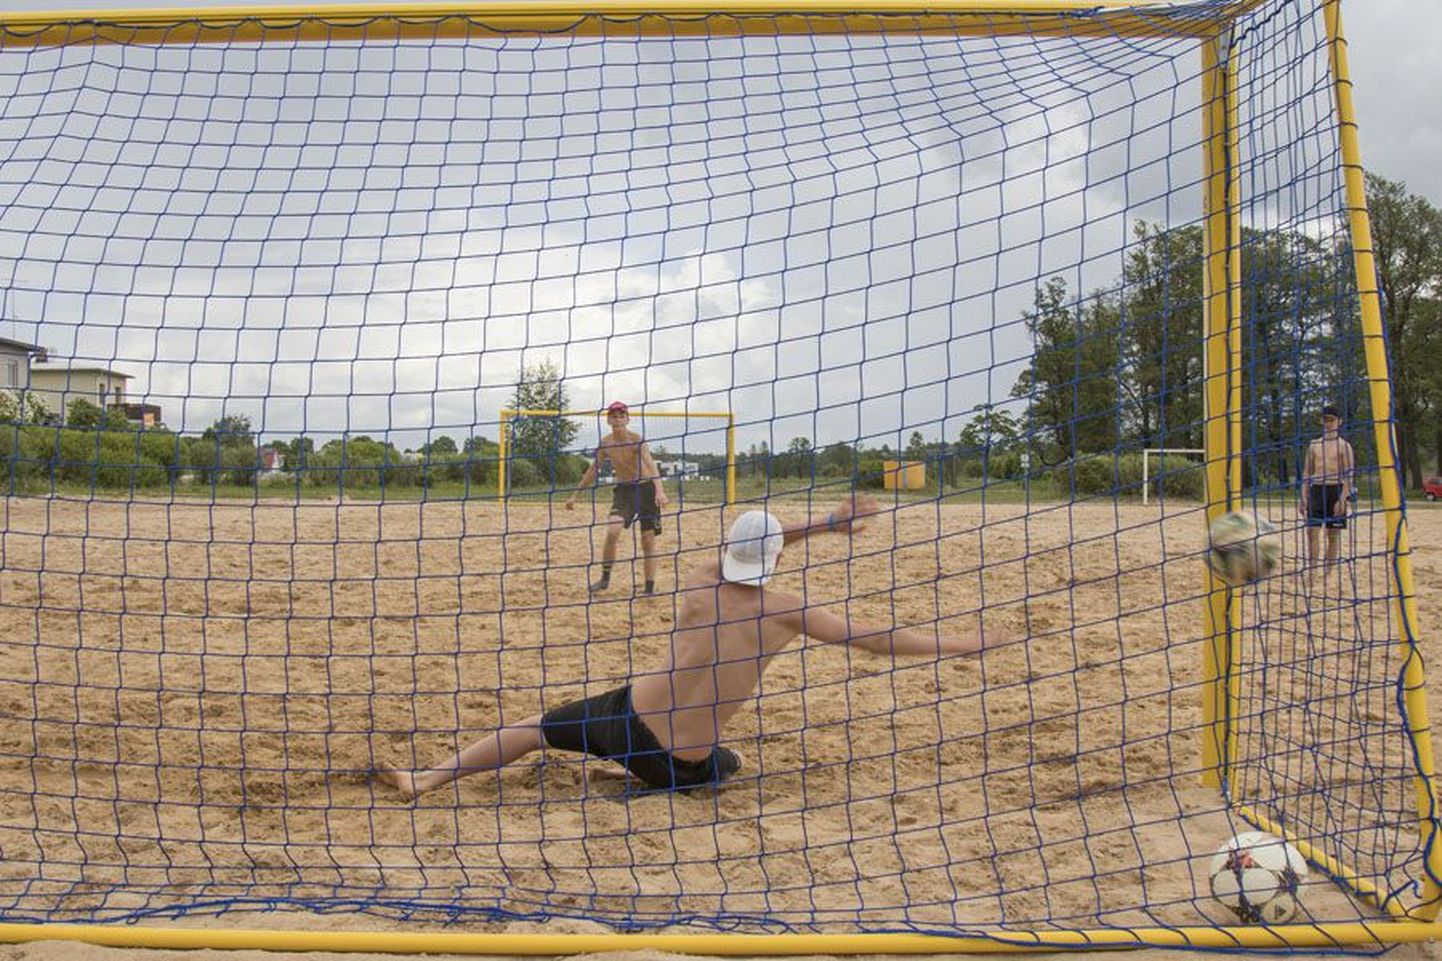 Praegu on Viljandi rannas harrastajatele rannajalgpalli mängimise võimalus tagatud, kuid rahvusvaheliste ja meistriliiga võistluste korraldamiseks on tarvis mõlemad väljakud rekonstrueerida.